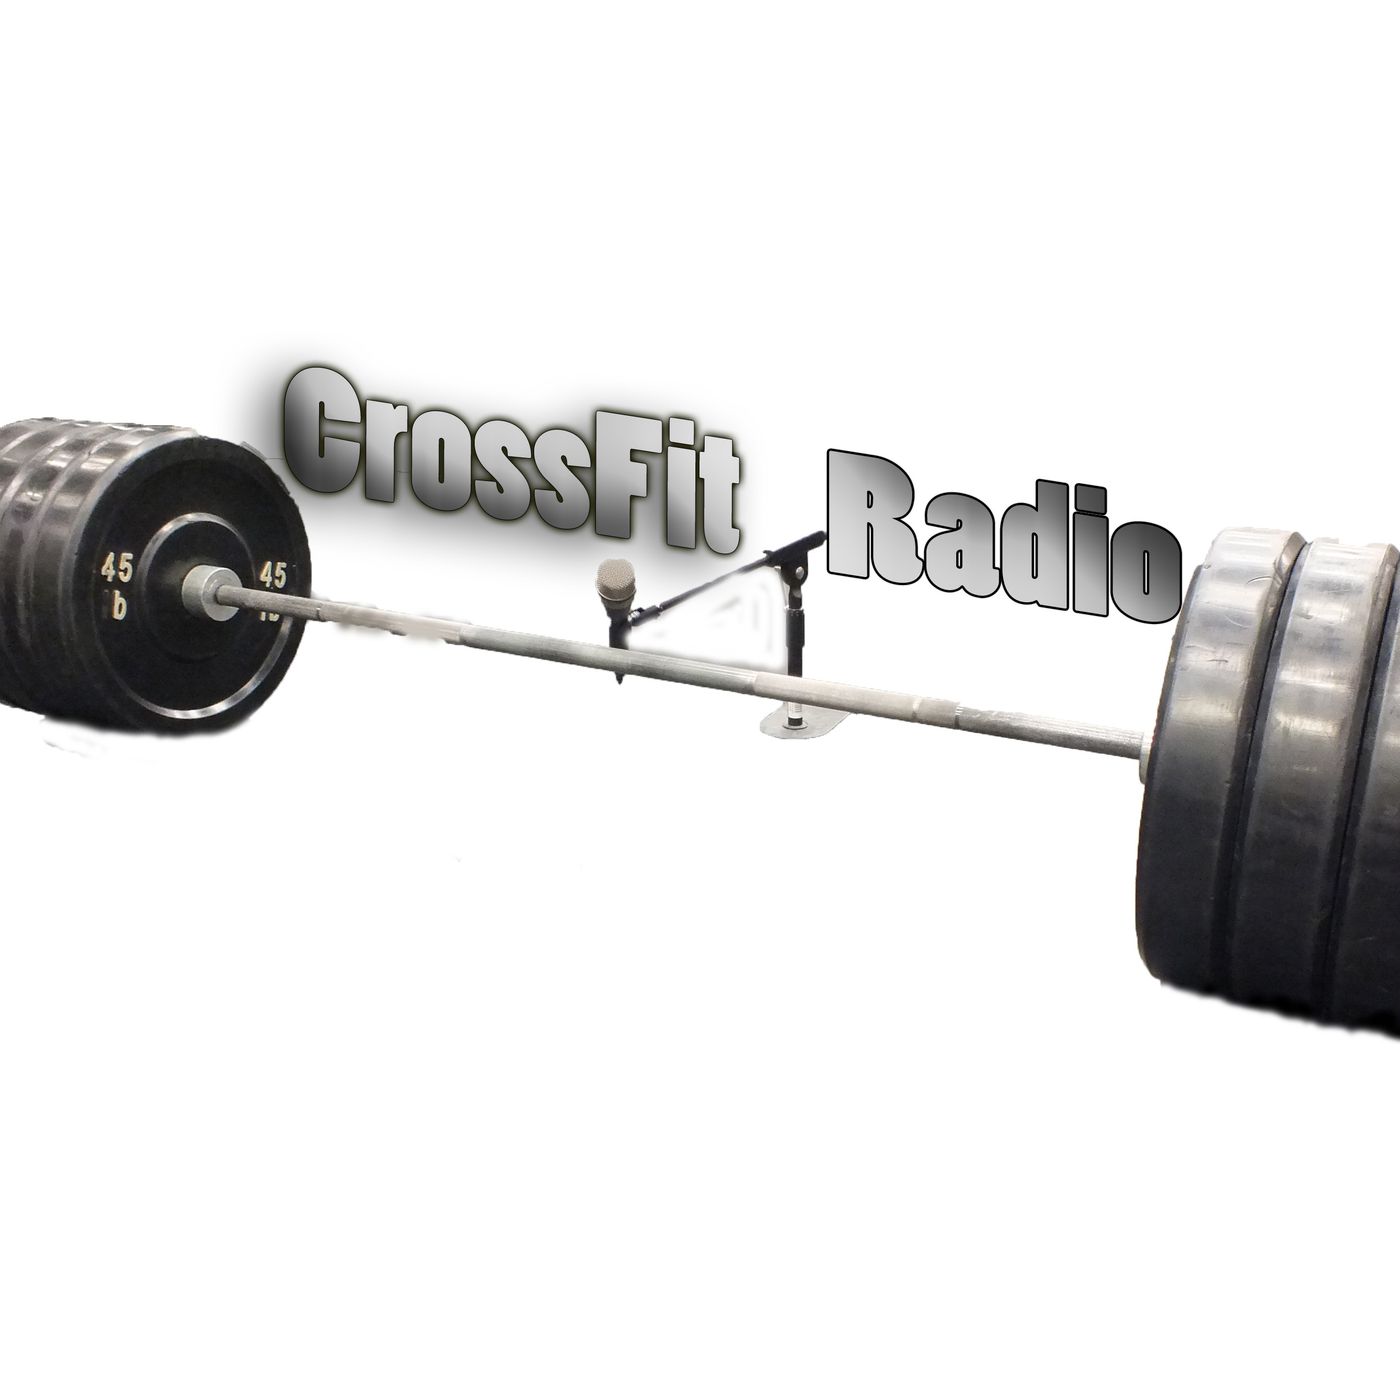 CrossFit Radio’s tracks